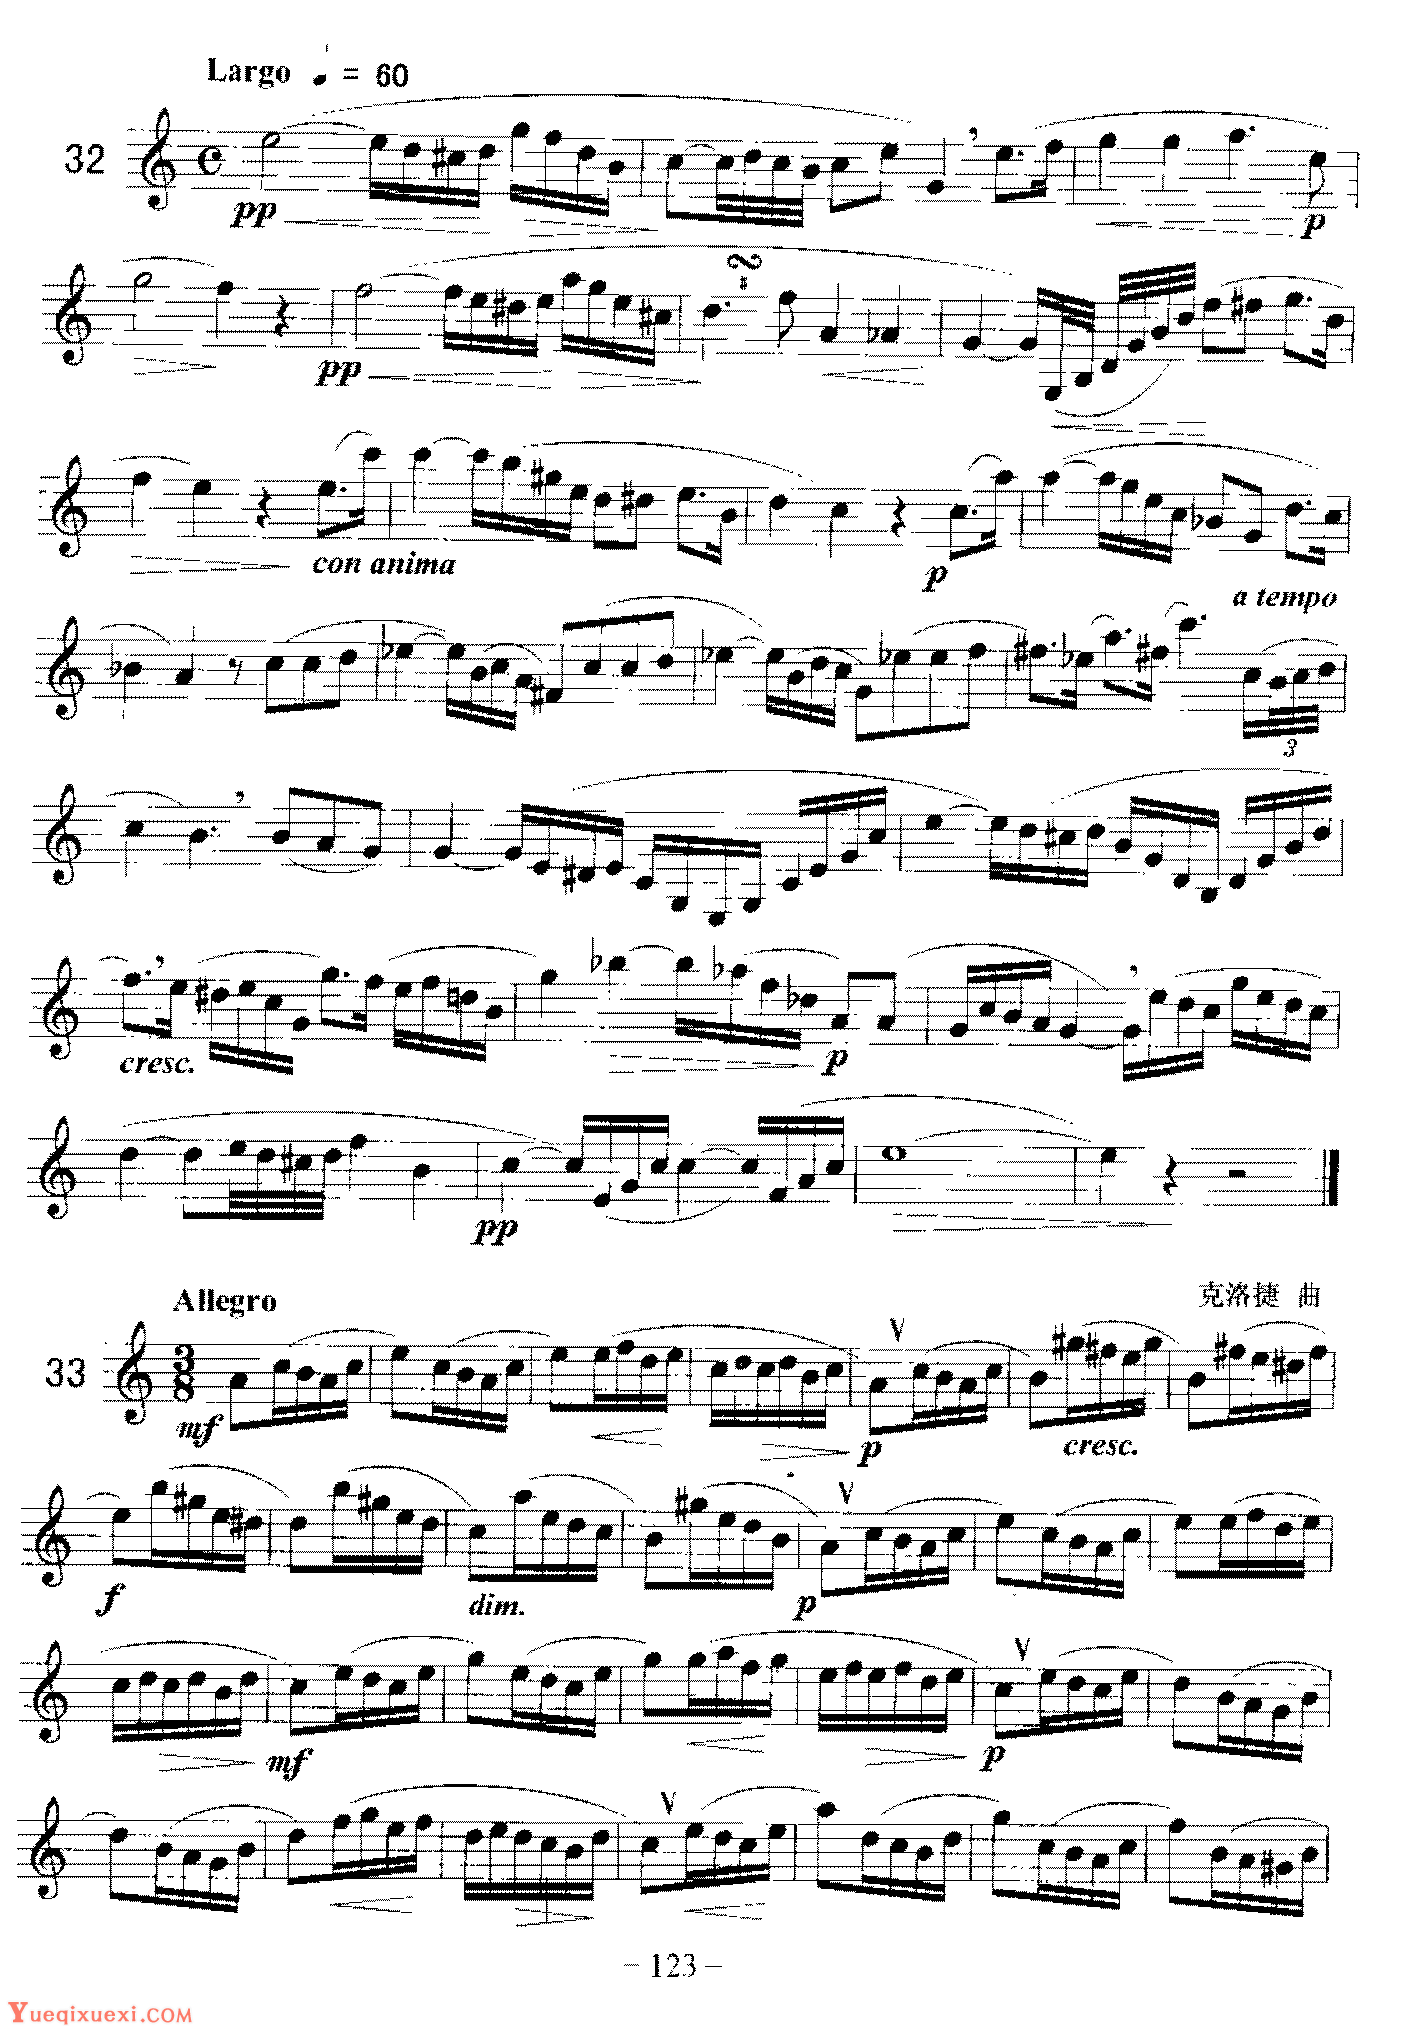 单簧管旋律性练习曲(1-53)